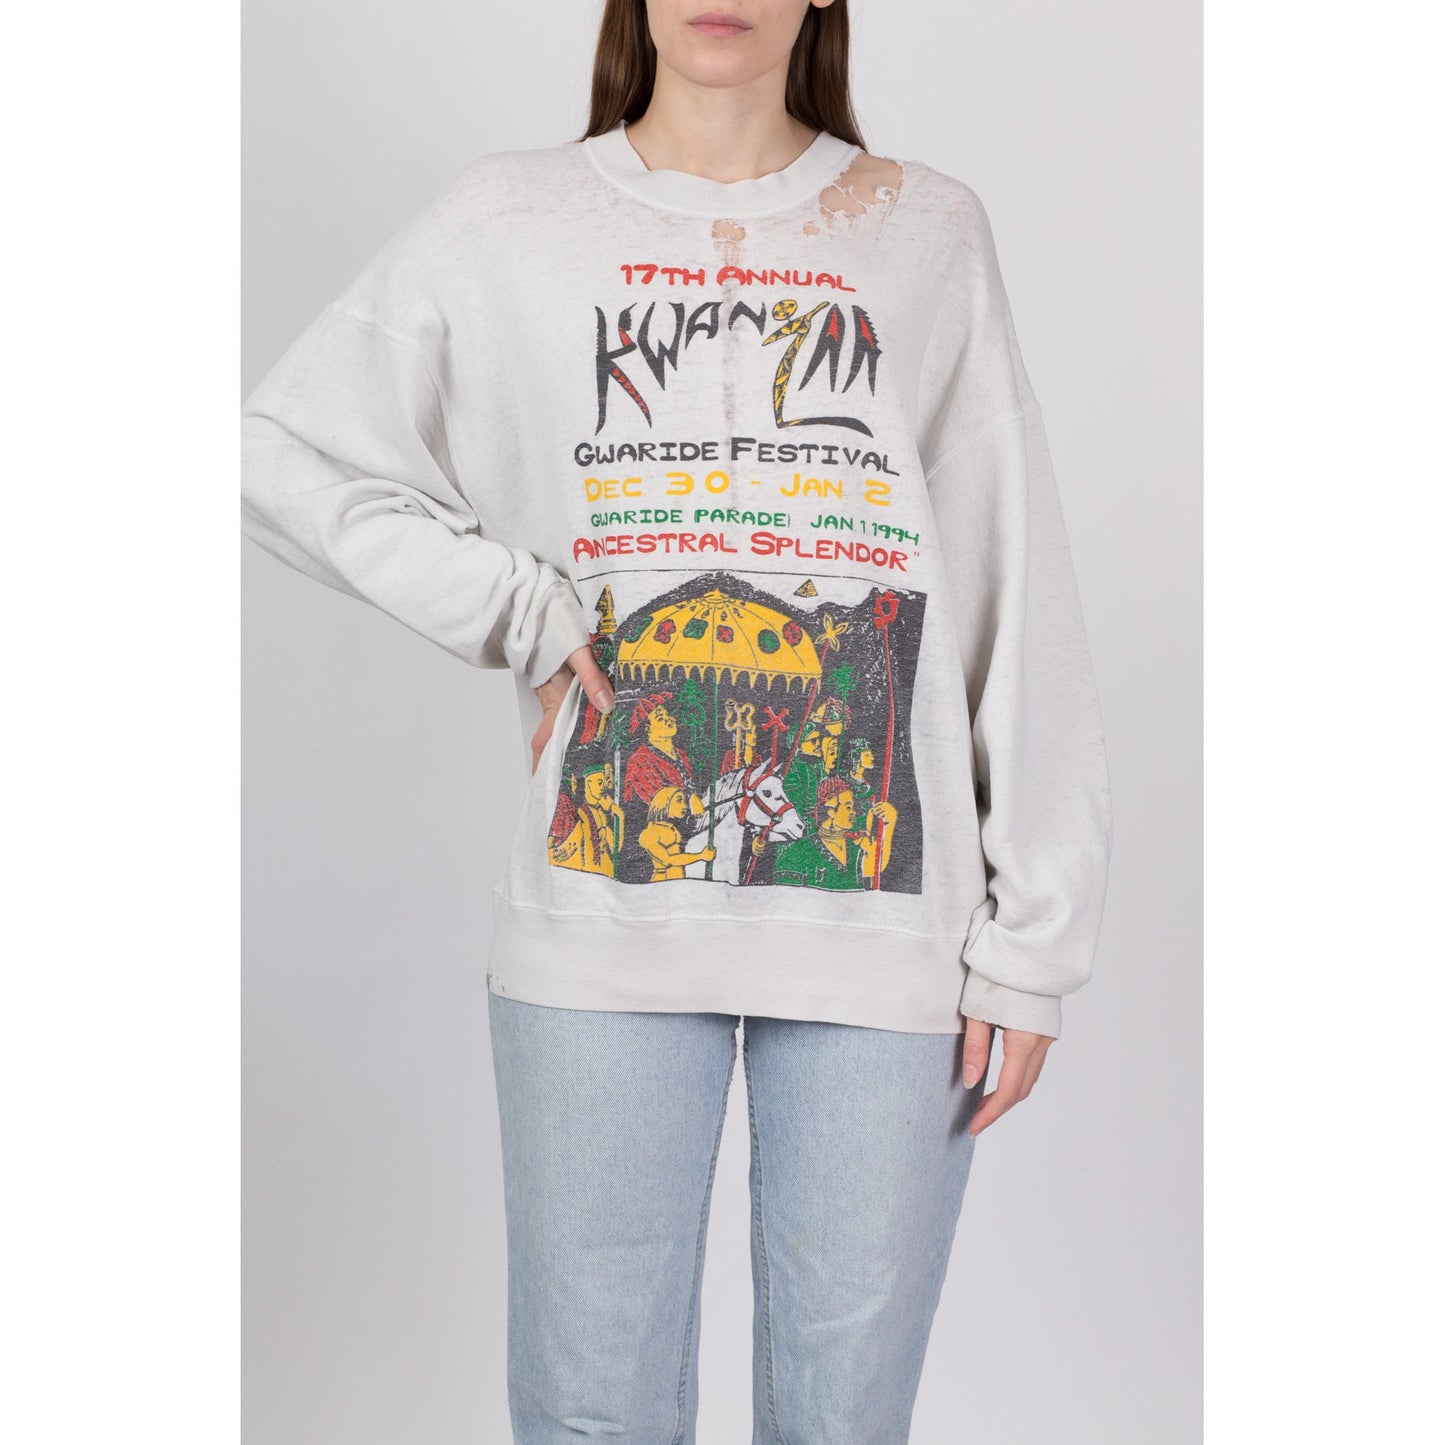 90s Kwanzaa Festival Thrashed Sweatshirt - Men's XL, Women's XXL 